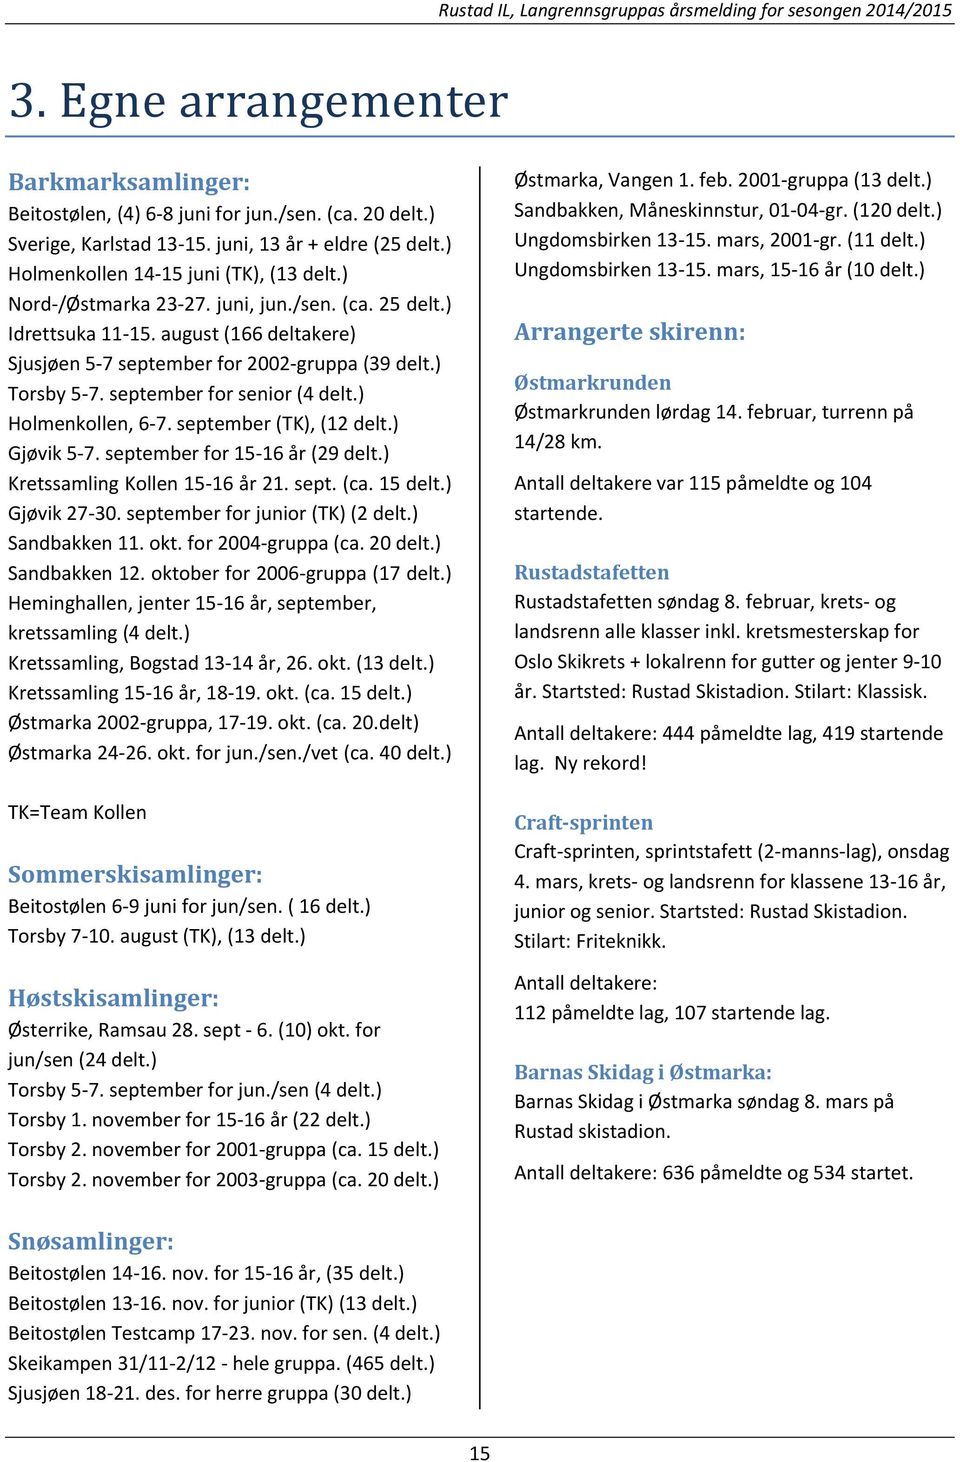 ) Holmenkollen, 6 7. september (TK), (12 delt.) Gjøvik 5 7. september for 15 16 år (29 delt.) Kretssamling Kollen 15 16 år 21. sept. (ca. 15 delt.) Gjøvik 27 30. september for junior (TK) (2 delt.